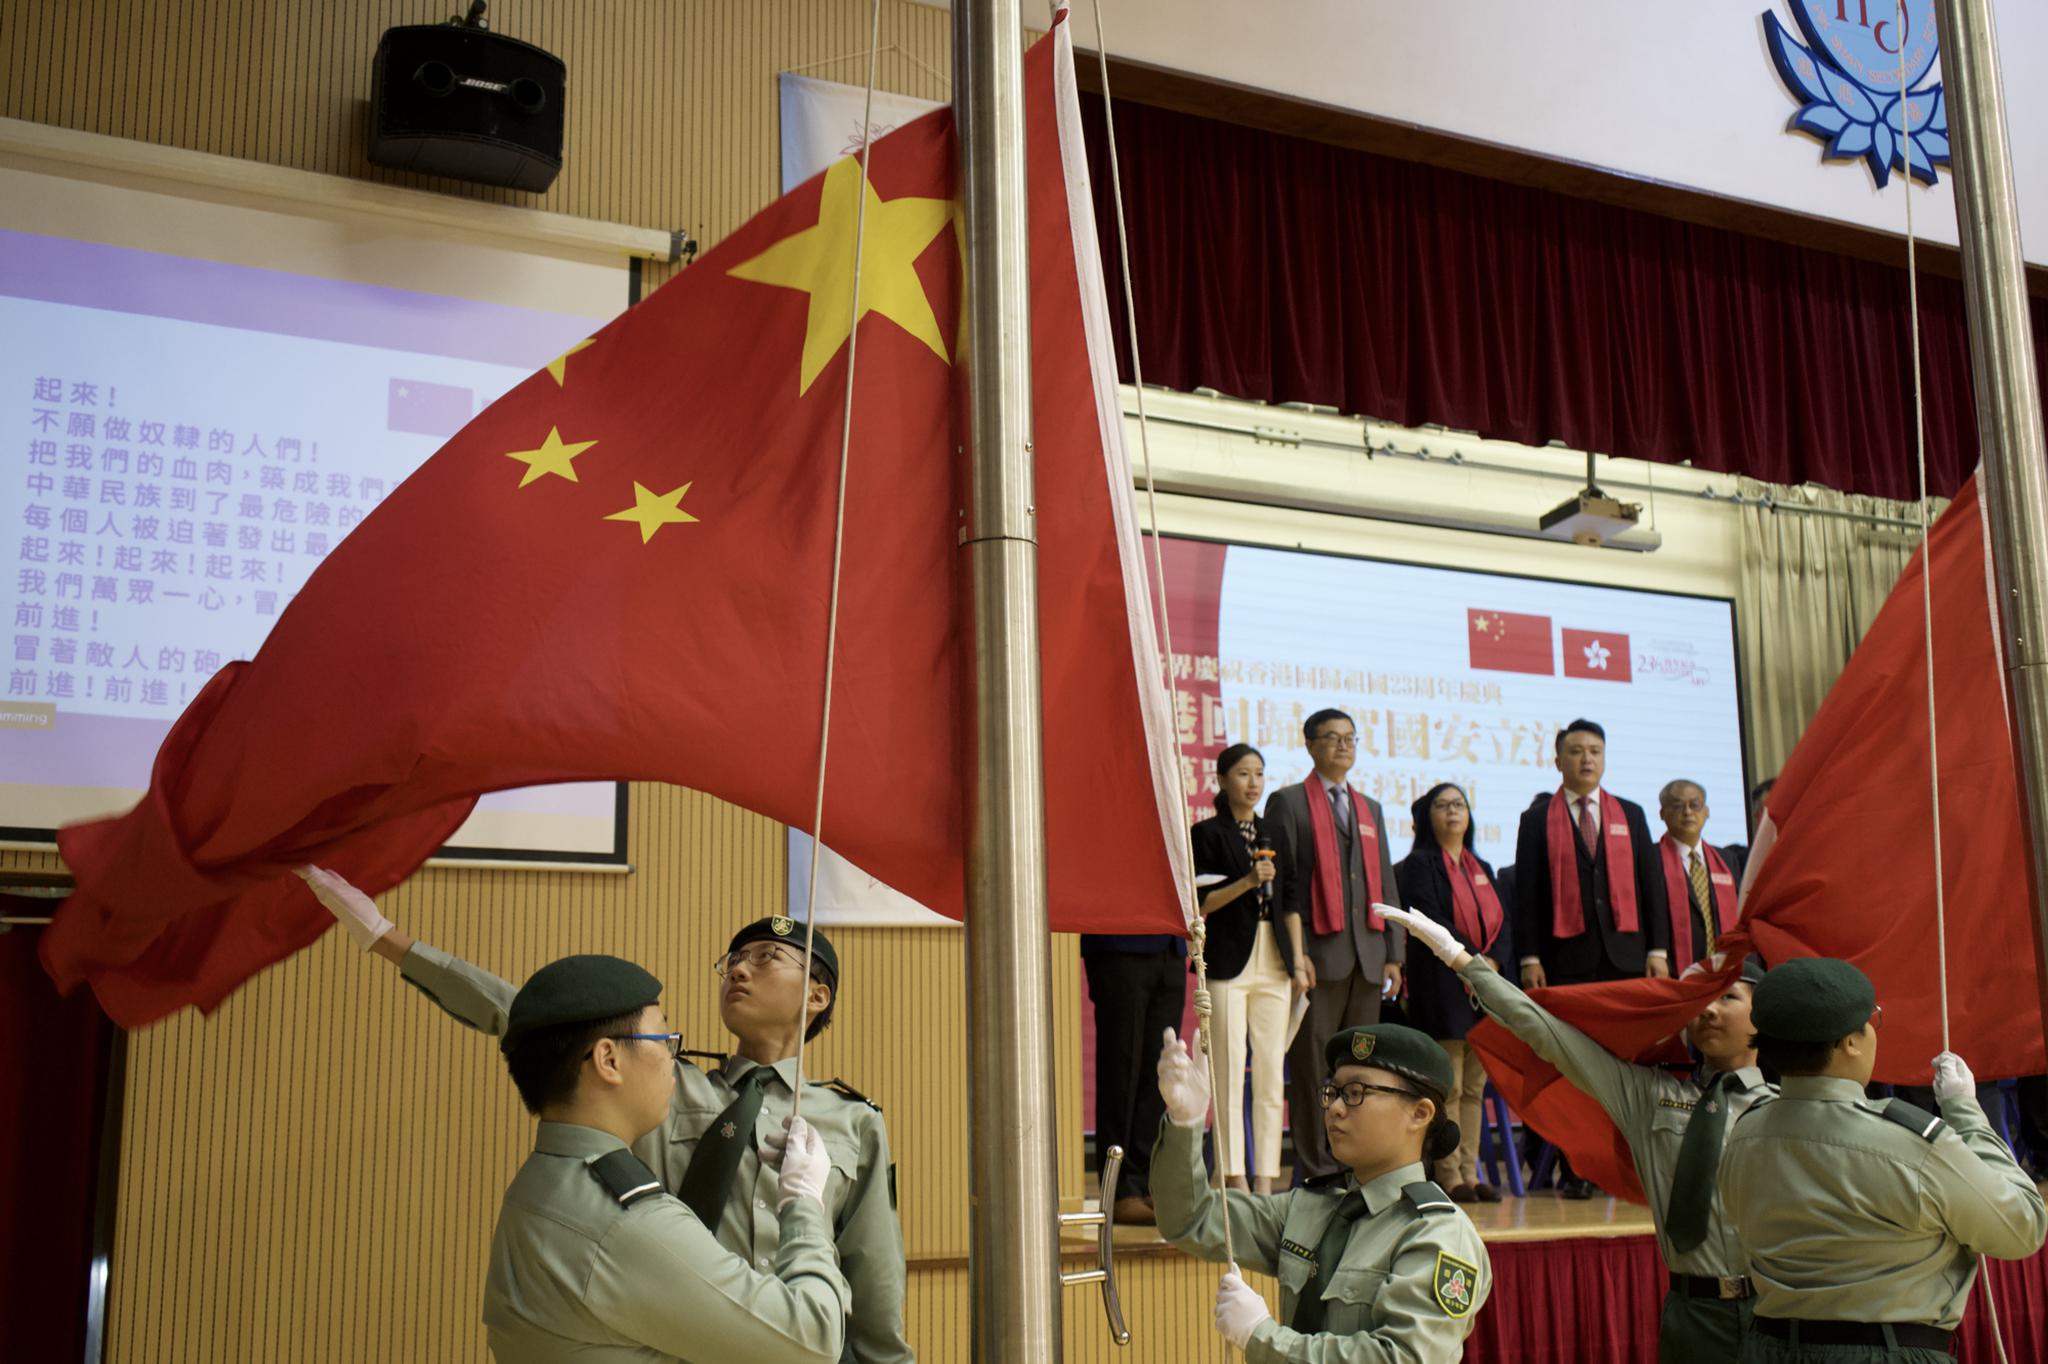 青少年制服团体社区升旗礼。 本文图片均为澎湃新闻香港报道组 图